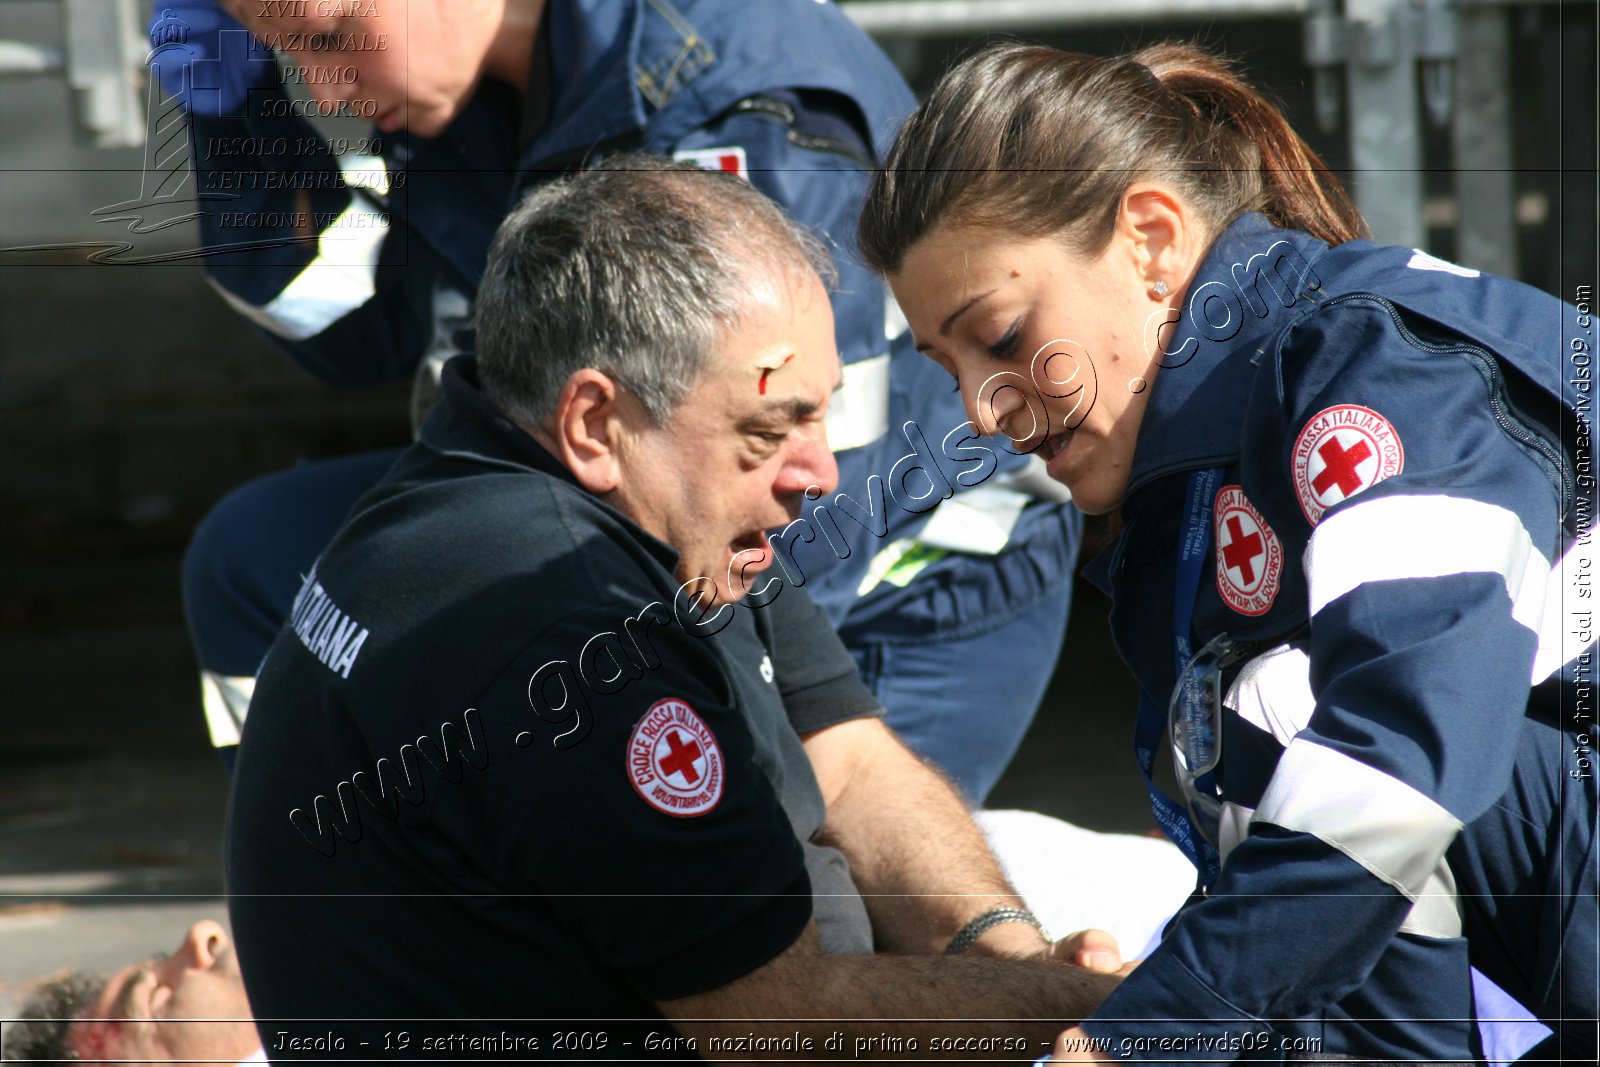 Jesolo - 19 settembre 2009 - Gara nazionale di primo soccorso - foto dal sito www.garecrivds09.com